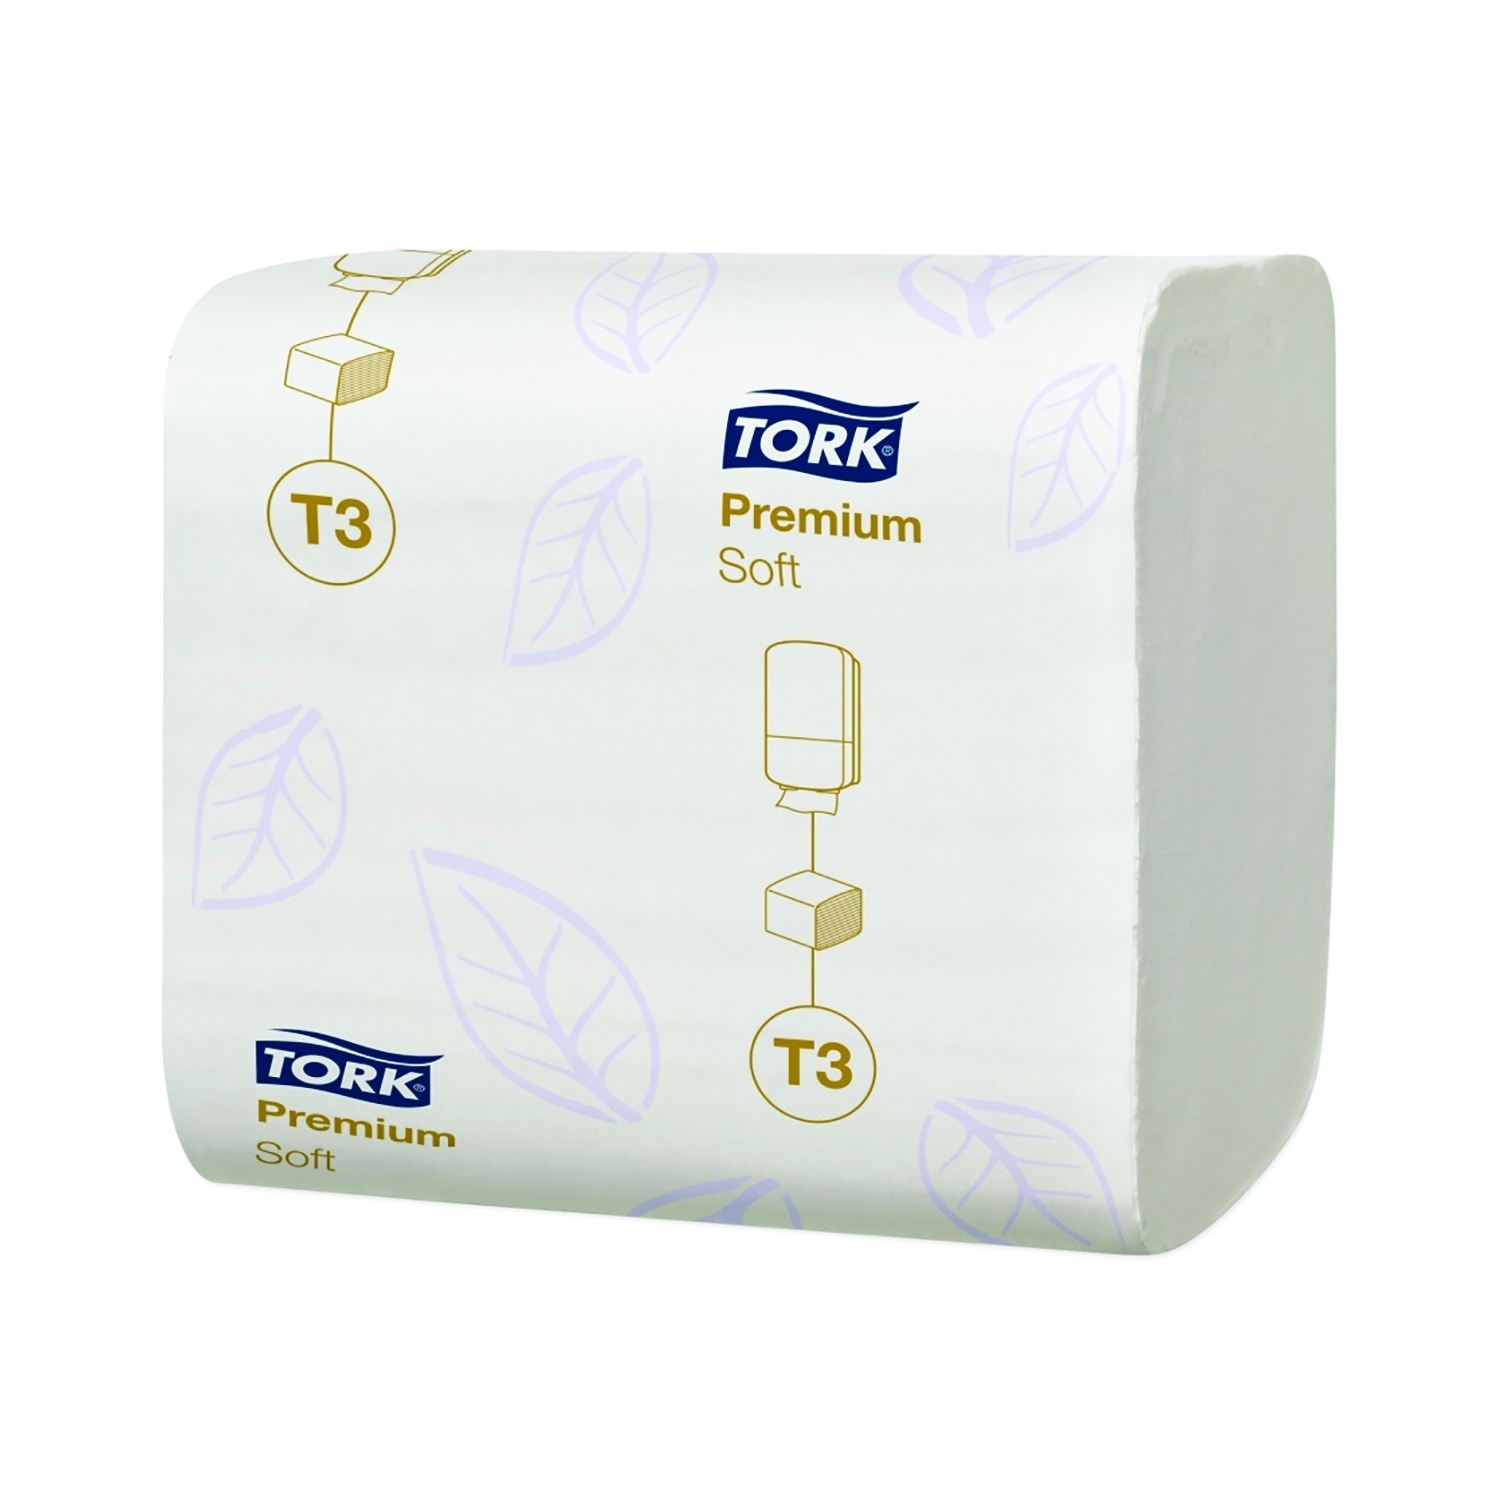 TORK toiletpapier T3 - soft - gevouwen 2 lagen - karton (30 x 252 vel.)